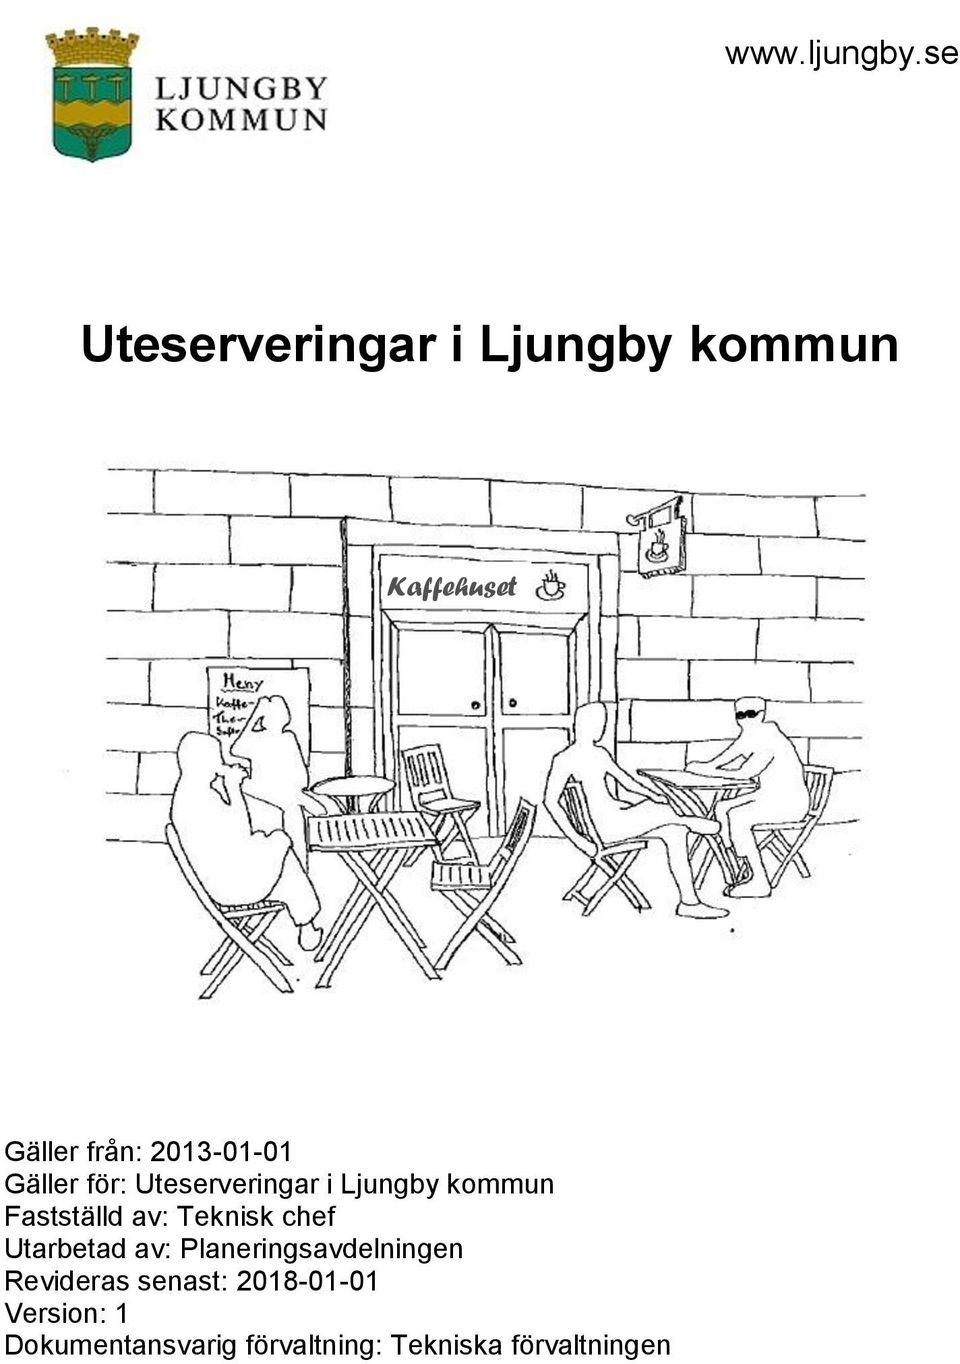 Gäller för: Uteserveringar i Ljungby kommun Fastställd av: Teknisk